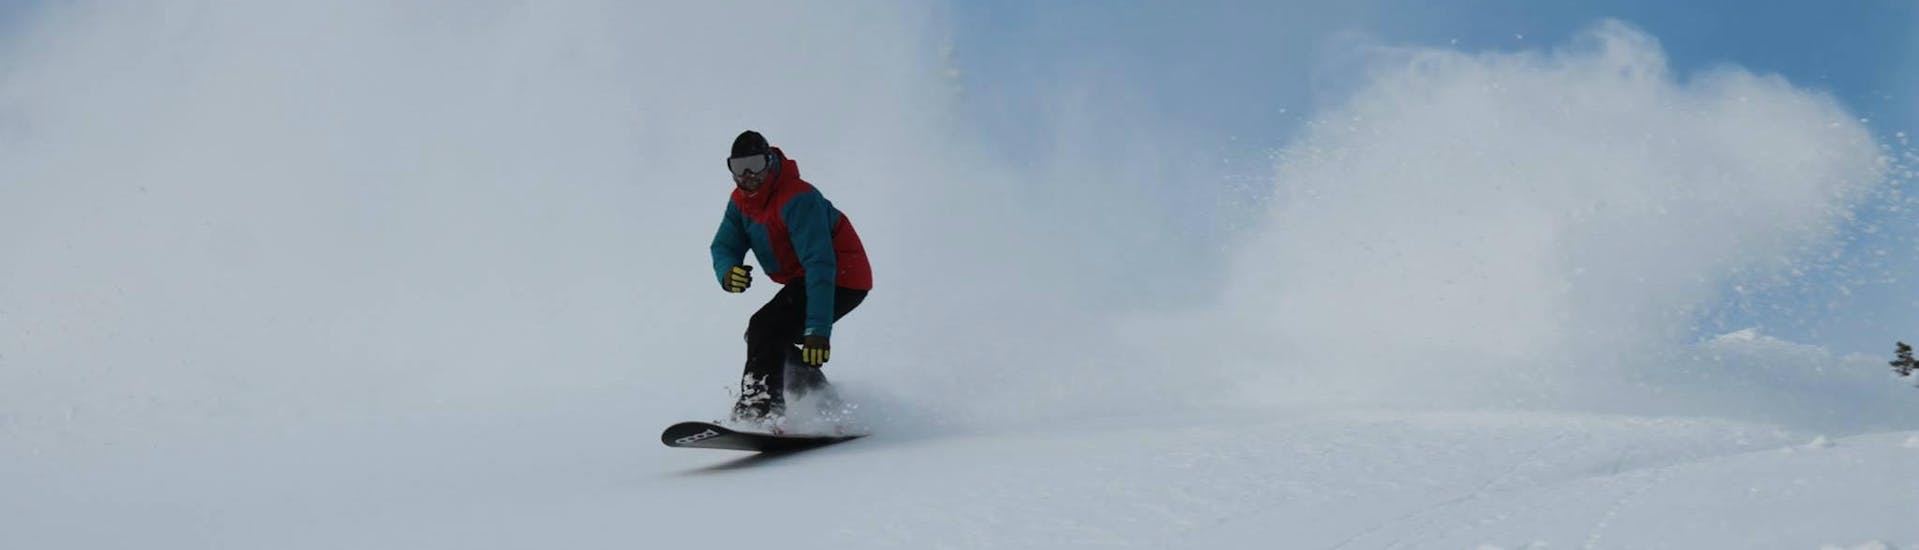 Ein Snowboarder beim Snowboardkurs für Kinder mit Ausrüstung bei der Snowboardschule Boardstars Schladming.